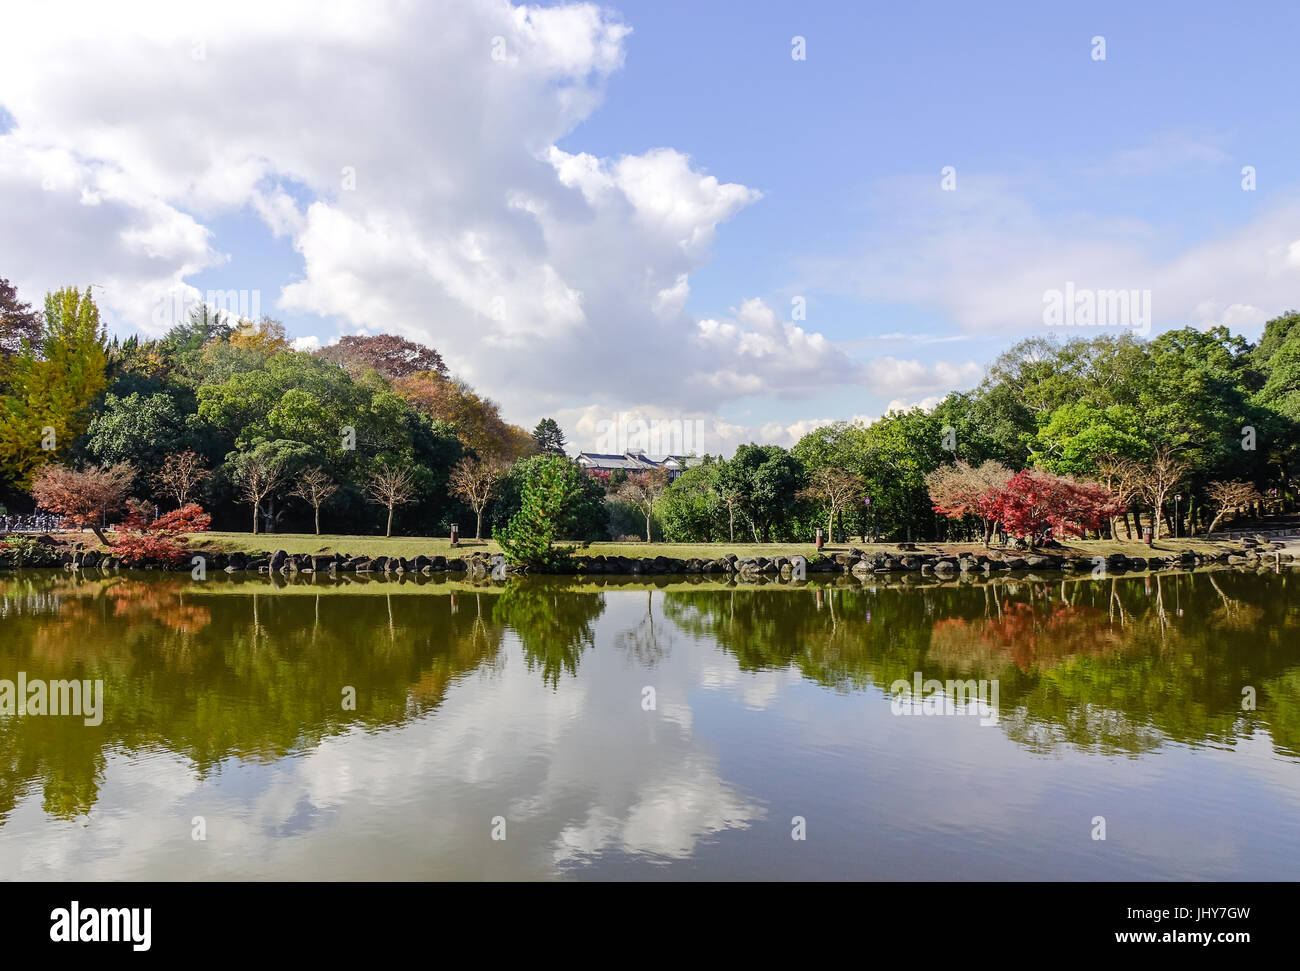 La vue sur le lac au parc de la ville de Nara, au Japon. Nara a été la capitale du Japon de 710 à 794, prêtant son nom à la période Nara. Banque D'Images